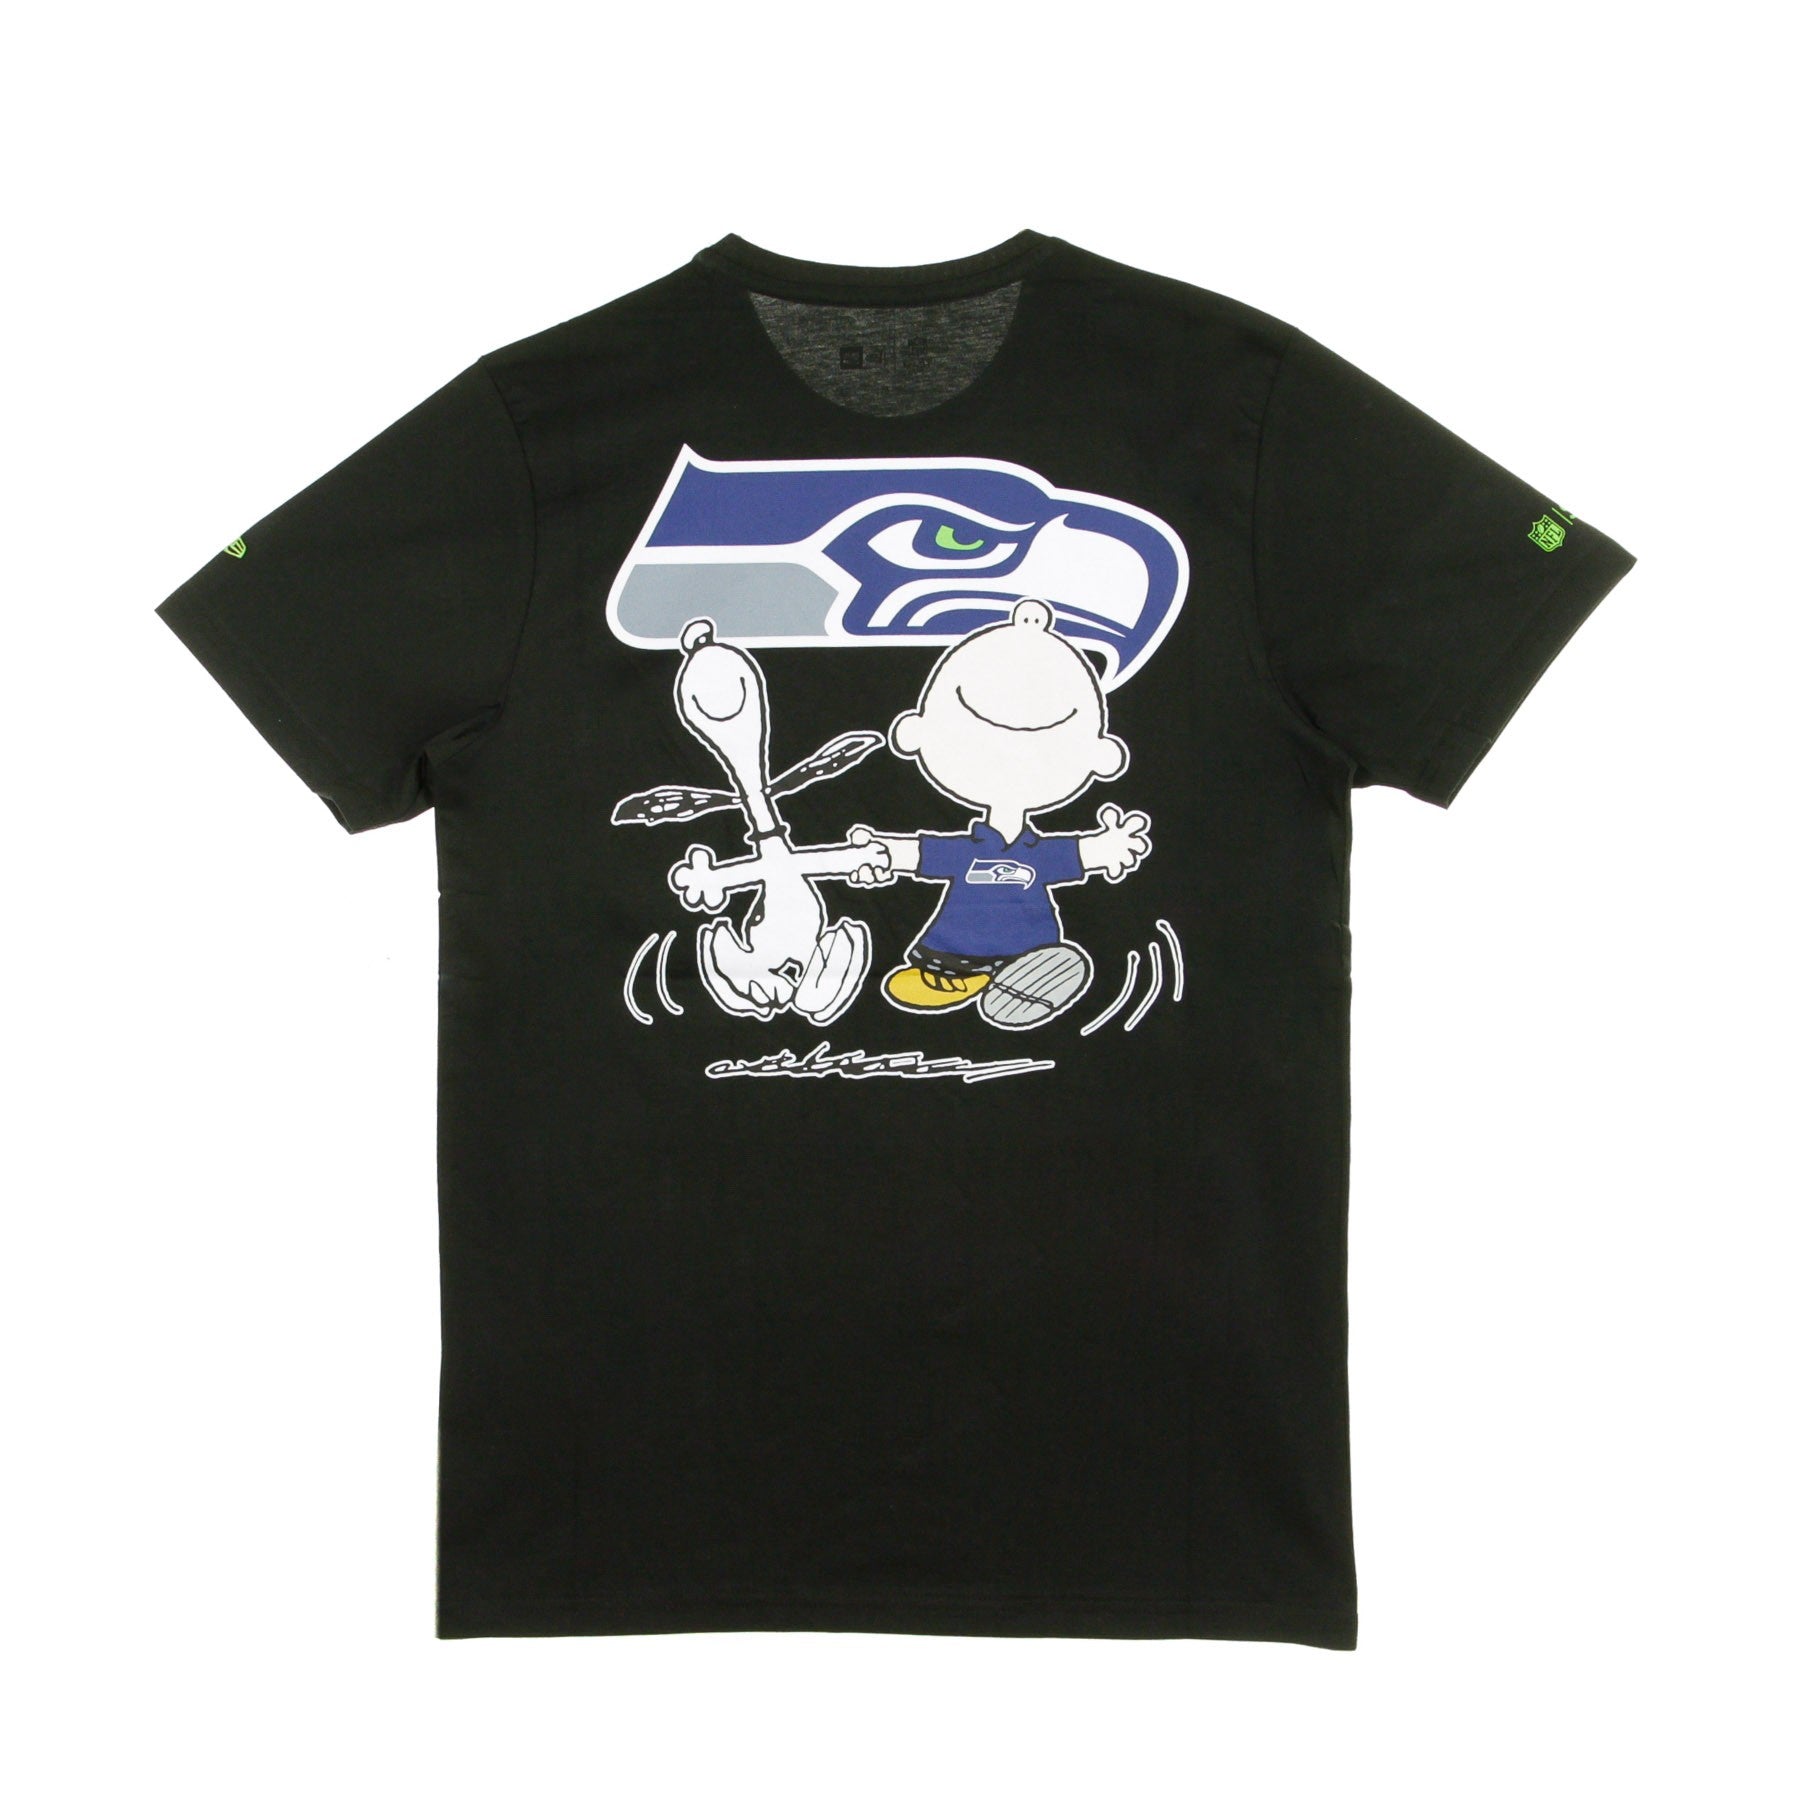 Men's T-Shirt NFL Snoopy Woodstock Charlie Brown Tee 94 Seasea Black/original Team Colors